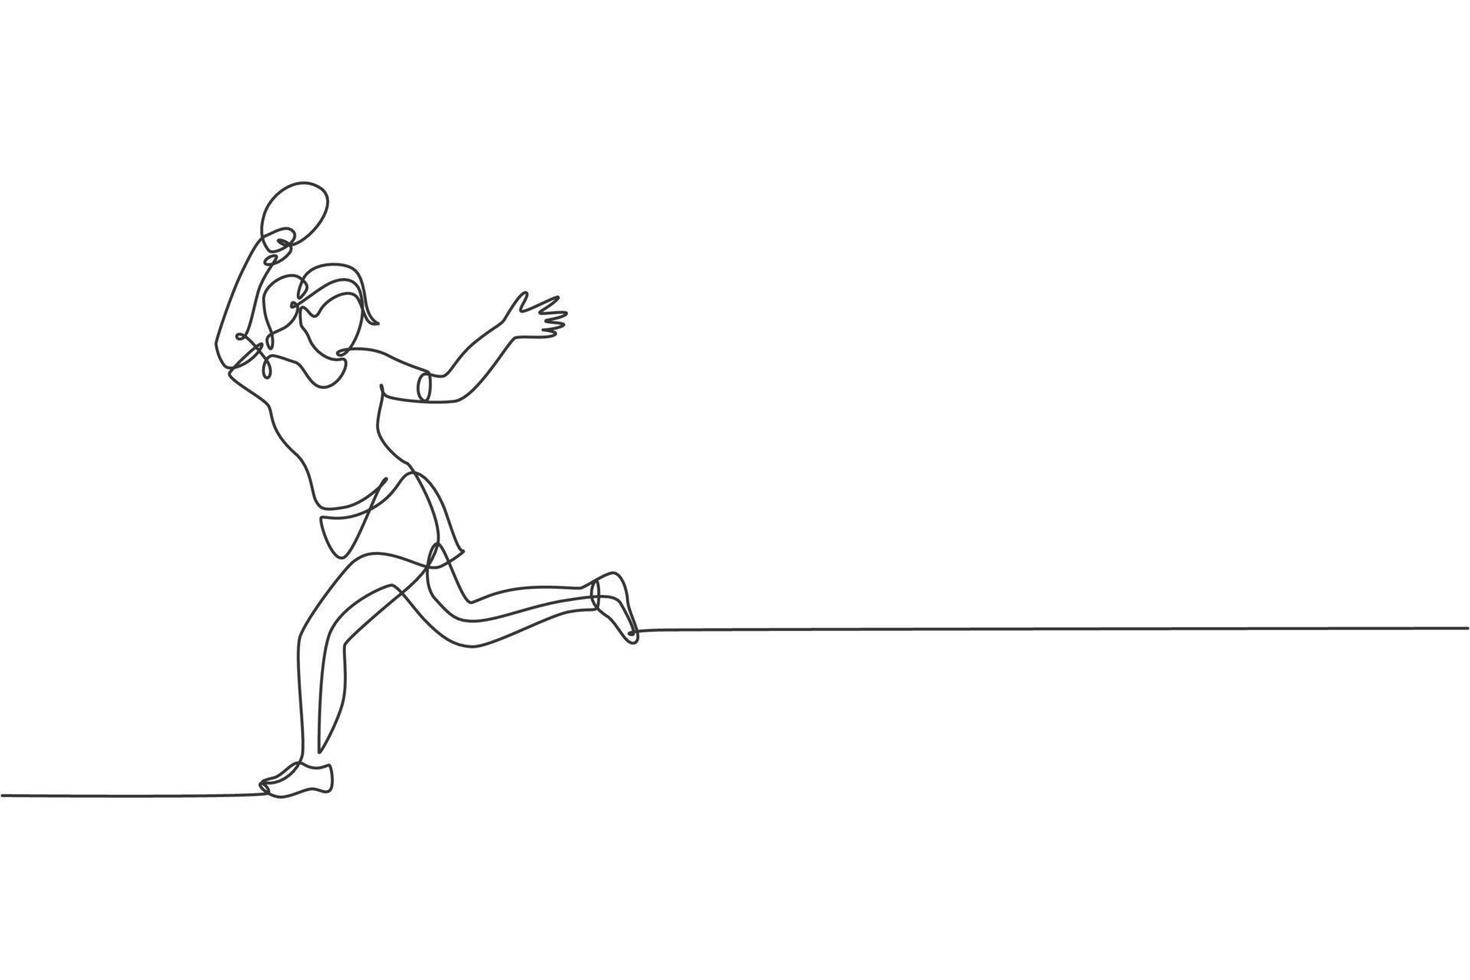 un disegno a linea continua di una giovane donna sportiva che gioca a ping pong attivo per prendere la palla. concetto di sport competitivo. illustrazione vettoriale di disegno a linea singola per il poster del campionato di ping pong